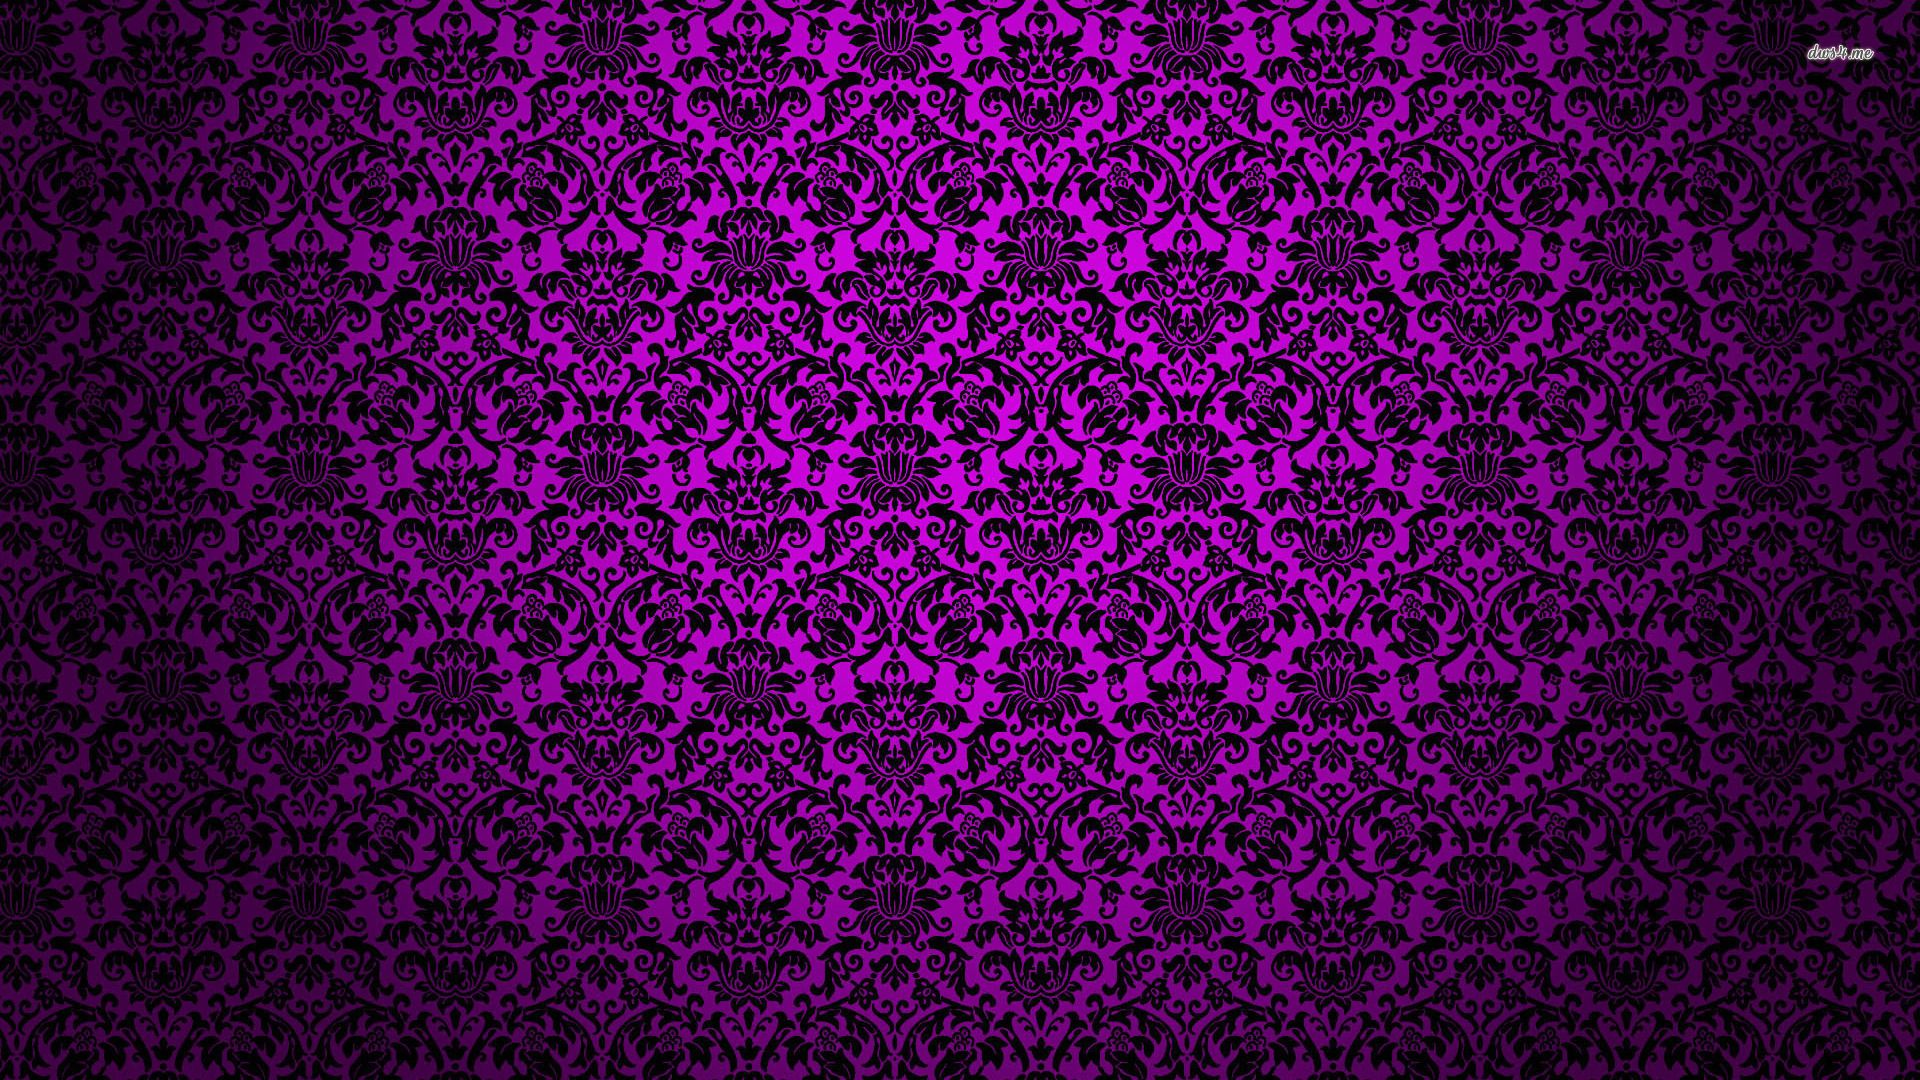 Dark Purple desktop wallpaper download